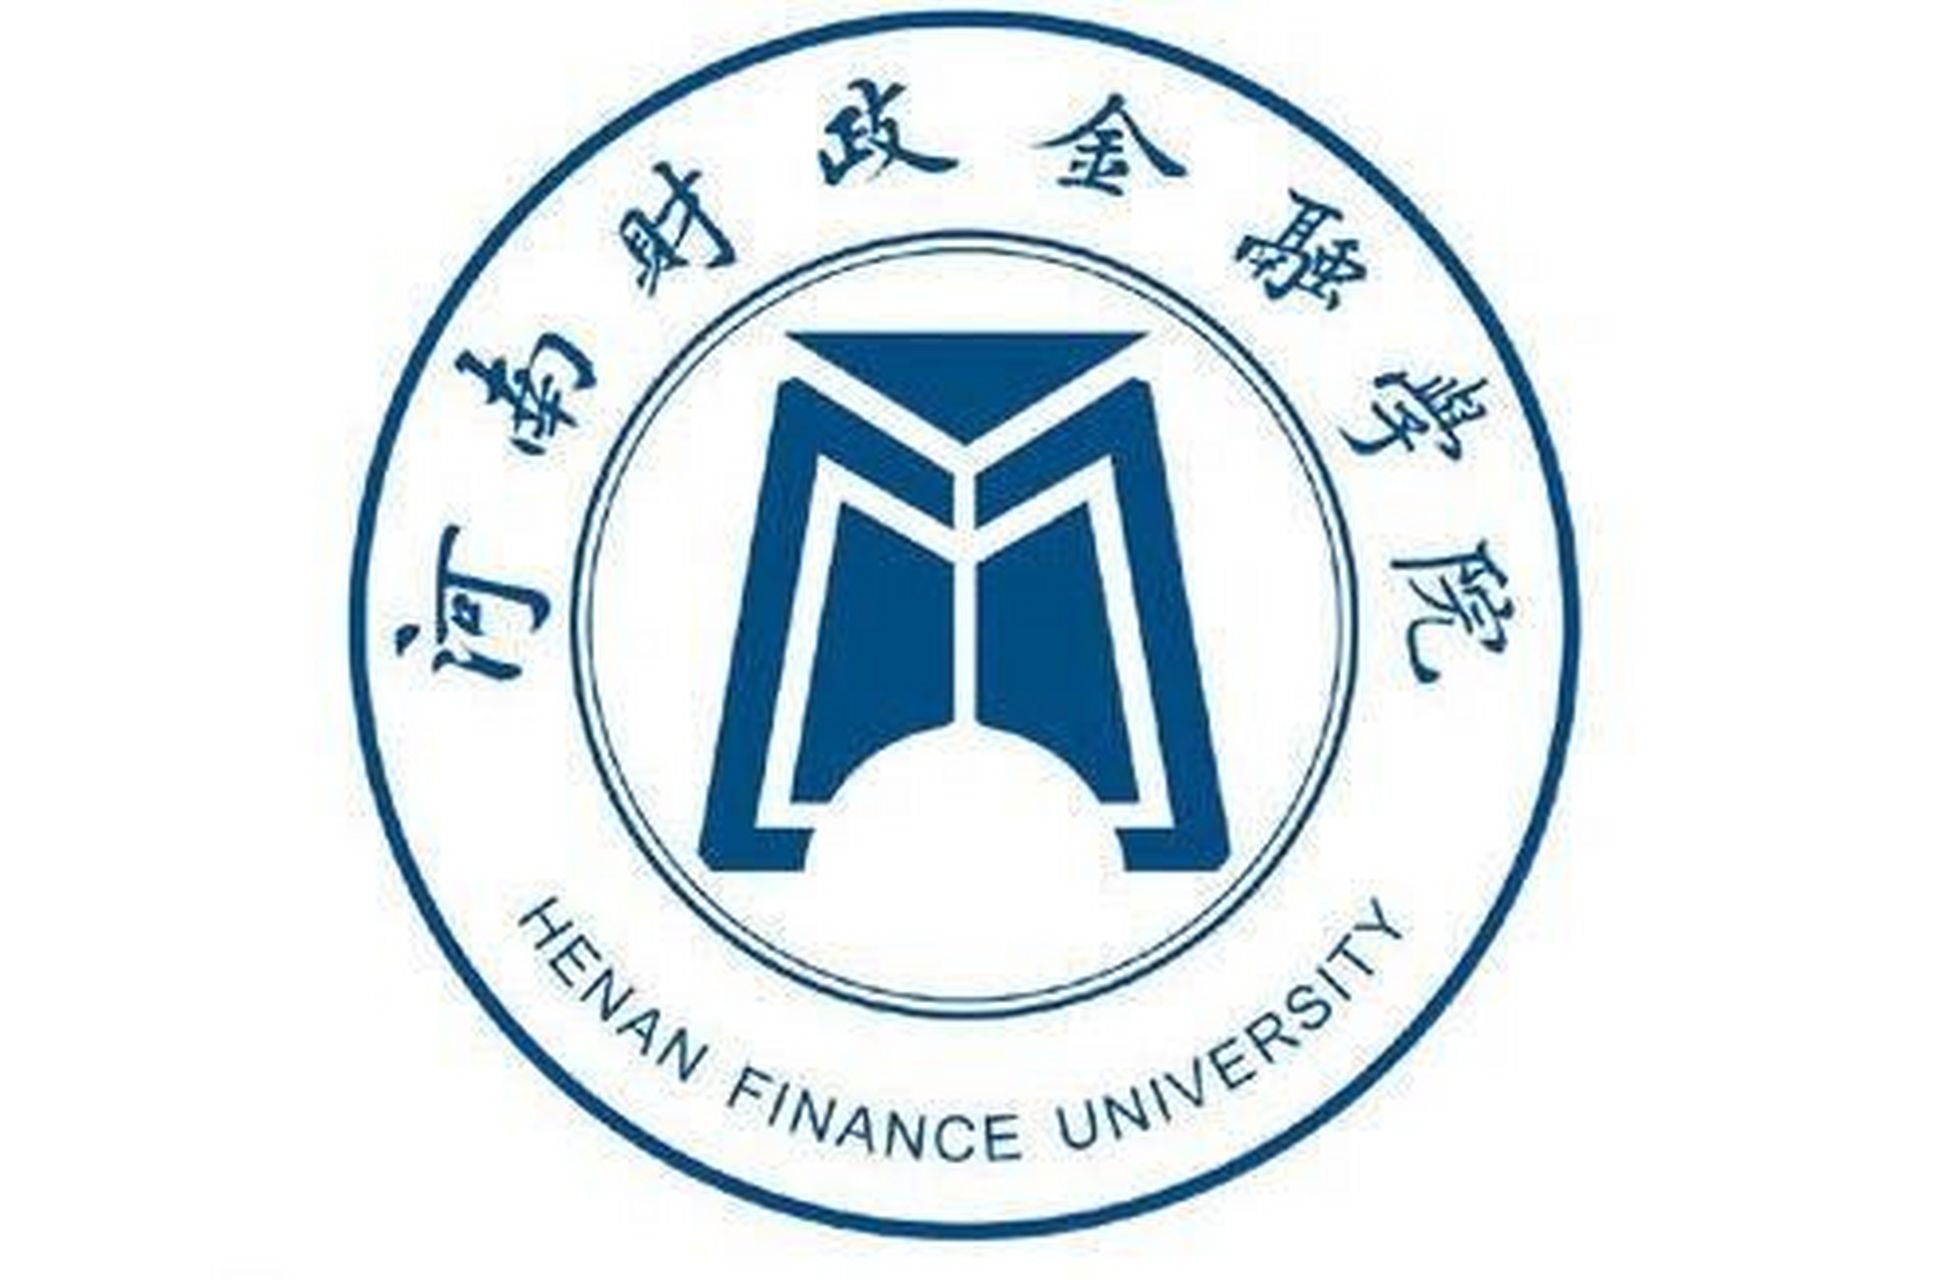 河南财政金融学院(henan finance university)位于河南省郑州市,是经